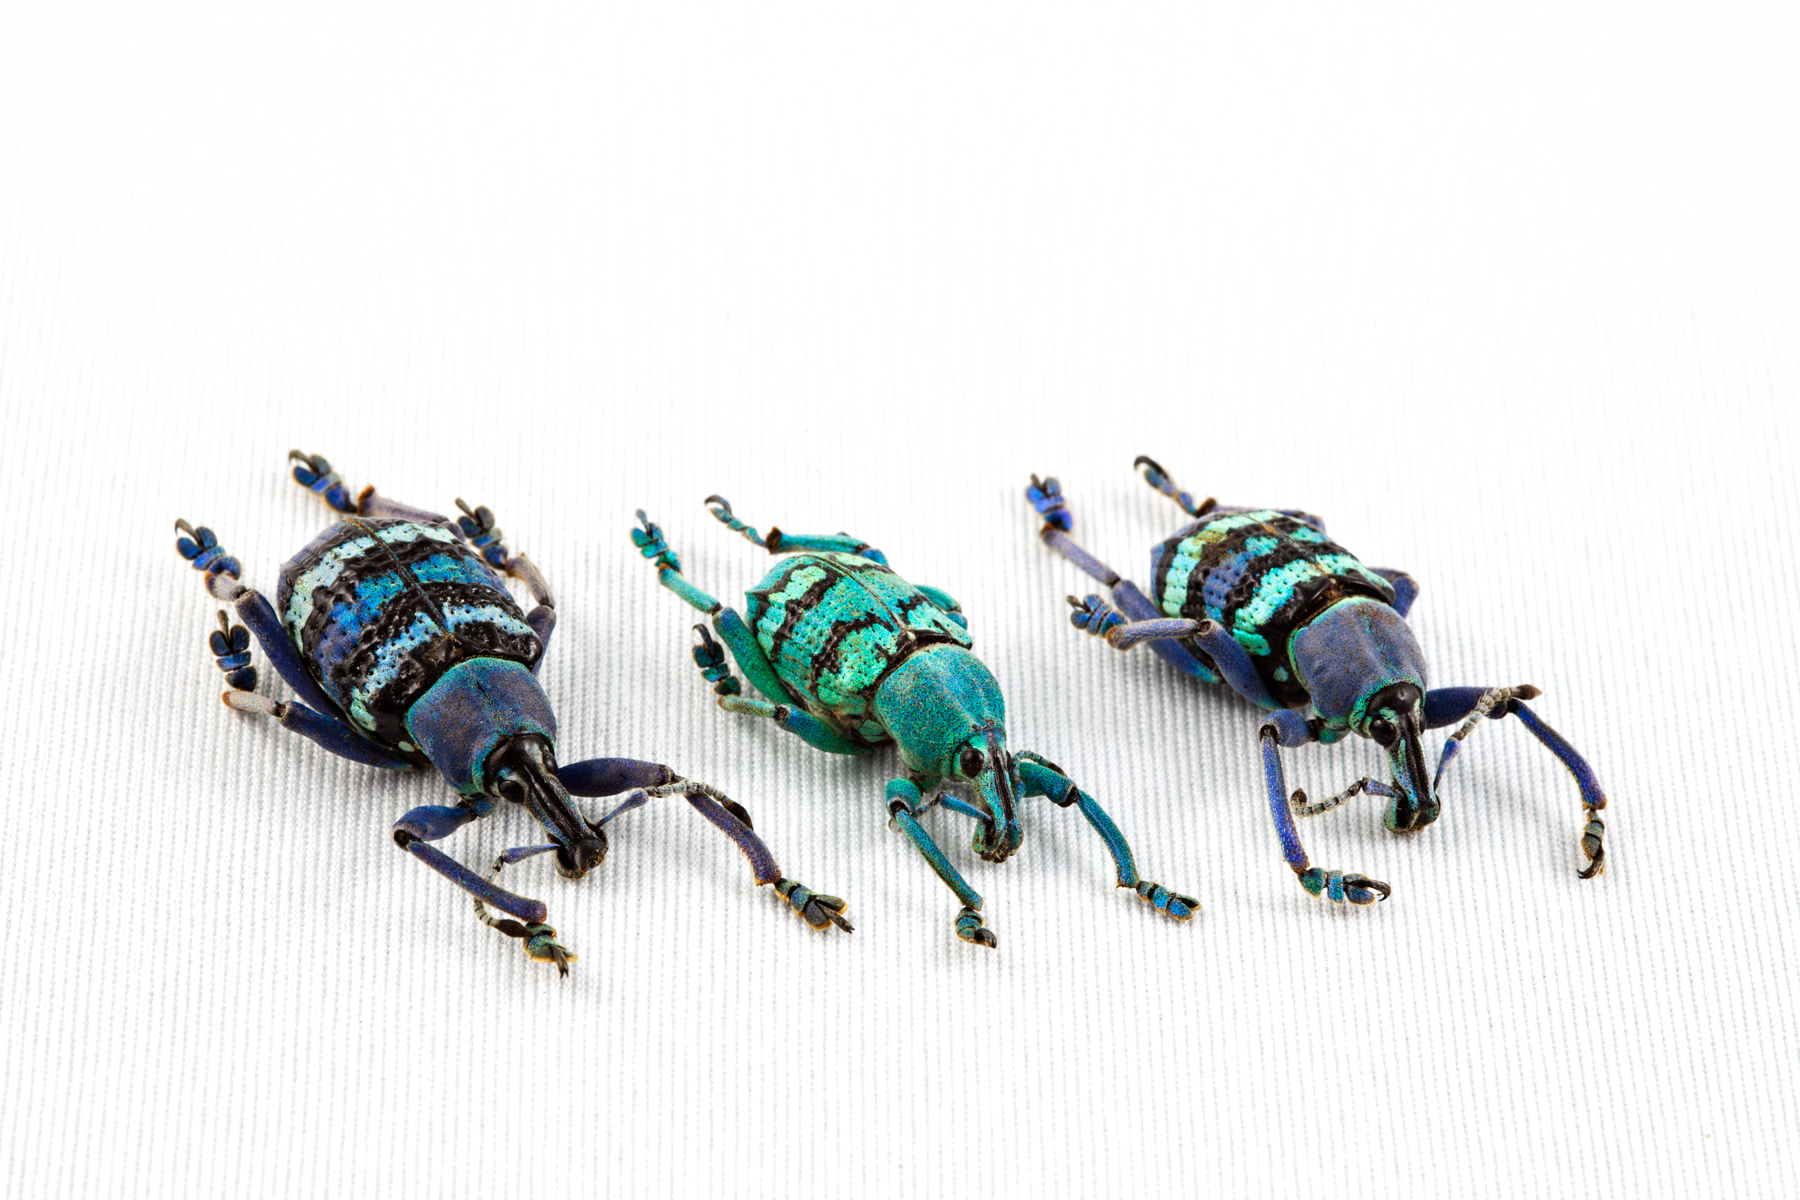 Eupholus beetle trio photo